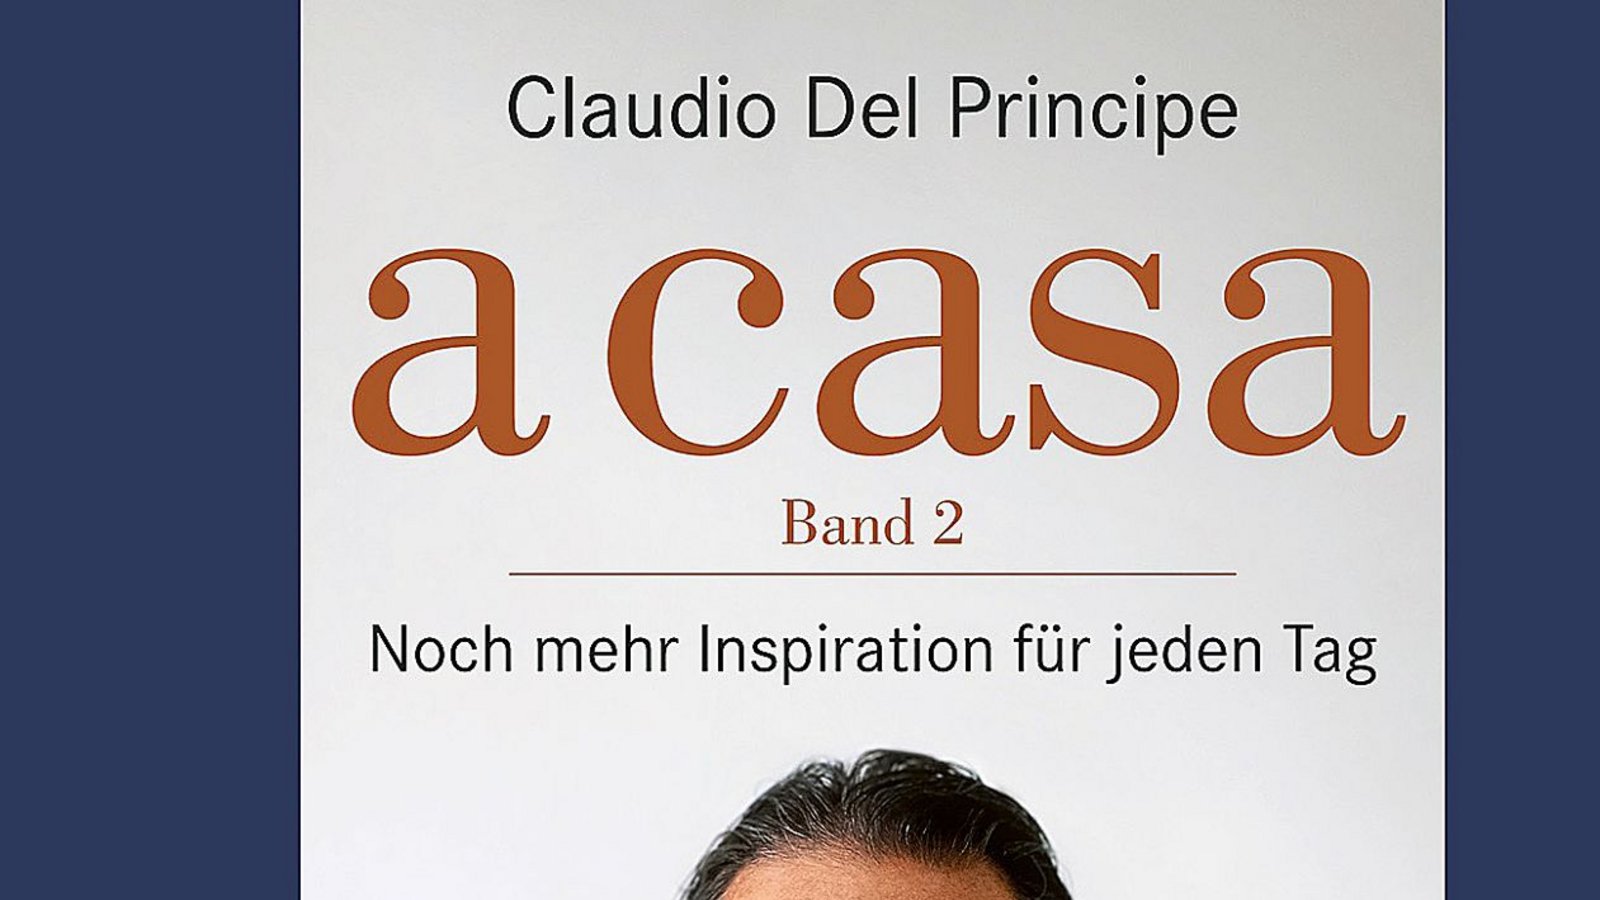 Claudia Del Principes Rezepte lassen sich wirklich für jeden Tag anwenden. Sie taugen zur perfekten Inspiration.Foto: Claudio Del Principe/AT Verlag